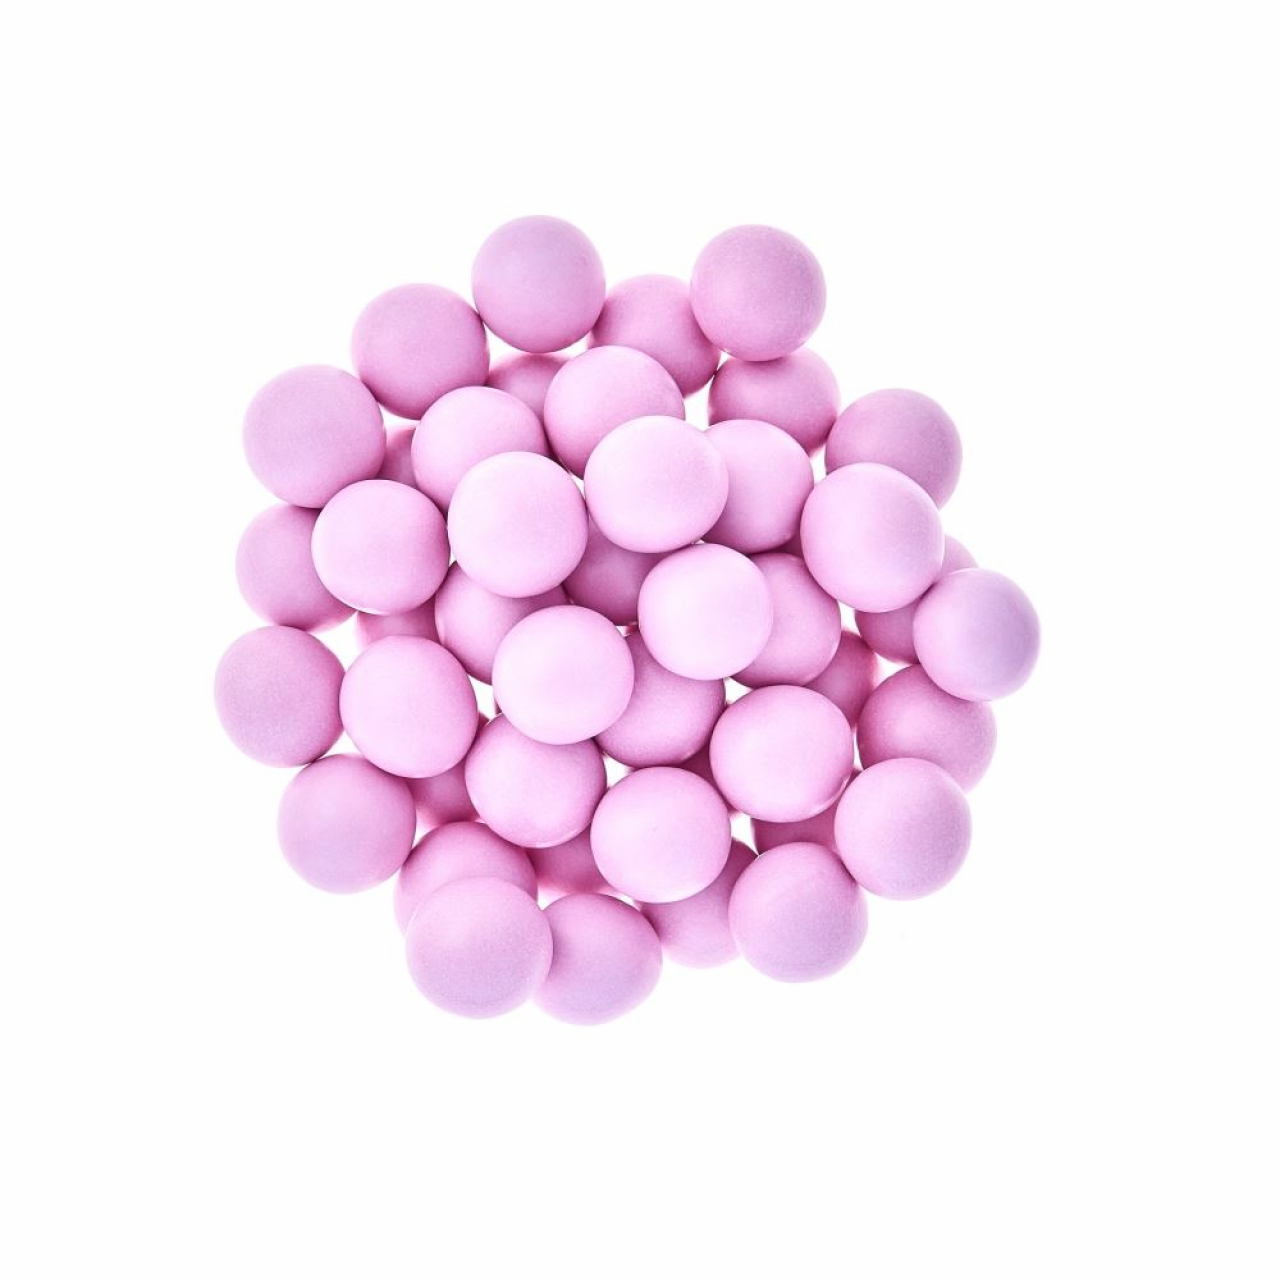 Óriás ropogós cukorgolyó -  Gyöngyház rózsaszín